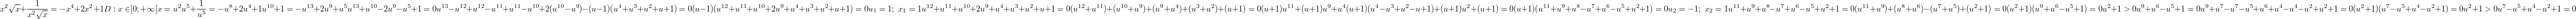 $$x^2\sqrt{x}+\frac{1}{x^2\sqrt{x}}=-x^4+2x^2+1\\D:x \in ]0;+\infty[\\x=u^2\\u^5+\frac{1}{u^5}=-u^8+2u^4+1\\u^{10}+1=-u^{13}+2u^{9}+u^5\\u^{13}+u^{10}-2u^9-u^5+1=0\\u^{13}-u^{12}+u^{12}-u^{11}+u^{11}-u^{10}+2(u^{10}-u^9)-(u-1)(u^4+u^3+u^2+u+1)=0\\(u-1)(u^{12}+u^{11}+u^{10}+2u^9+u^4+u^3+u^2+u+1)=0\\u_1=1;\text{  } x_1=1\\u^{12}+u^{11}+u^{10}+2u^9+u^4+u^3+u^2+u+1=0\\(u^{12}+u^{11})+(u^{10}+u^9)+(u^9+u^4)+(u^3+u^2)+(u+1)=0\\(u+1)u^{11}+(u+1)u^{9}+u^4(u+1)(u^4-u^3+u^2-u+1)+(u+1)u^2+(u+1)=0\\(u+1)(u^{11}+u^9+u^8-u^7+u^6-u^5+u^2+1)=0\\u_2=-1;\text{  } x_2=1\\u^{11}+u^9+u^8-u^7+u^6-u^5+u^2+1=0\\(u^{11}+u^9)+(u^8+u^6)-(u^7+u^5)+(u^2+1)=0\\(u^2+1)(u^9+u^6-u^5+1)=0\\u^2+1>0\\u^9+u^6-u^5+1=0\\u^9+u^7-u^7-u^5+u^6+u^4-u^4-u^2+u^2+1=0\\(u^2+1)(u^7-u^5+u^4-u^2+1)=0\\u^2+1>0\\u^7-u^5+u^4-u^2+1=0$$